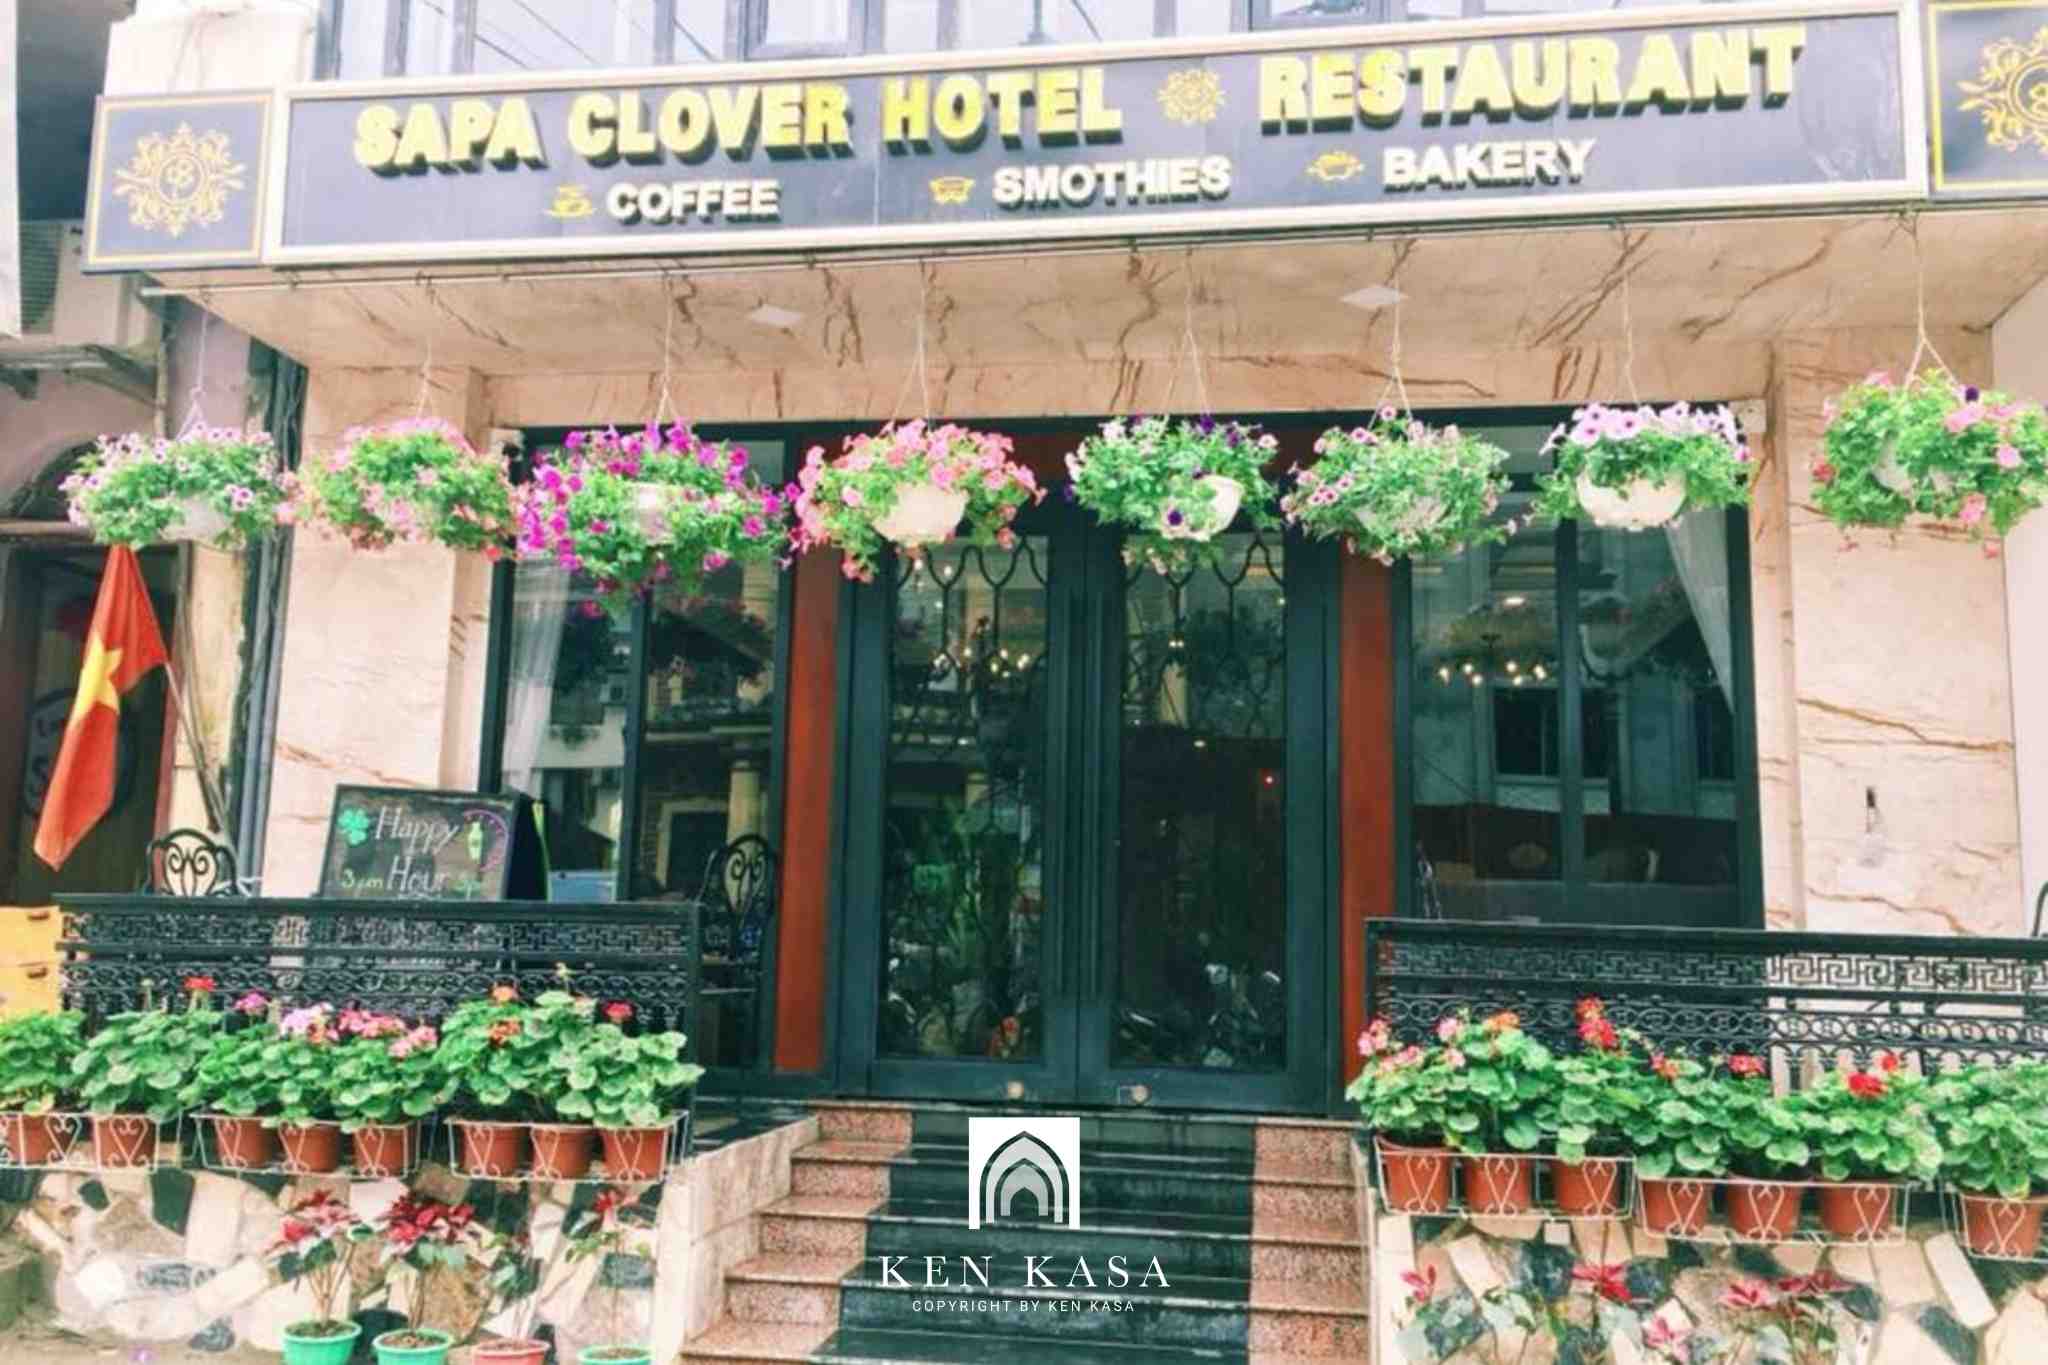 Sapa Clover Hotel là khách sạn đẹp ở Sapa